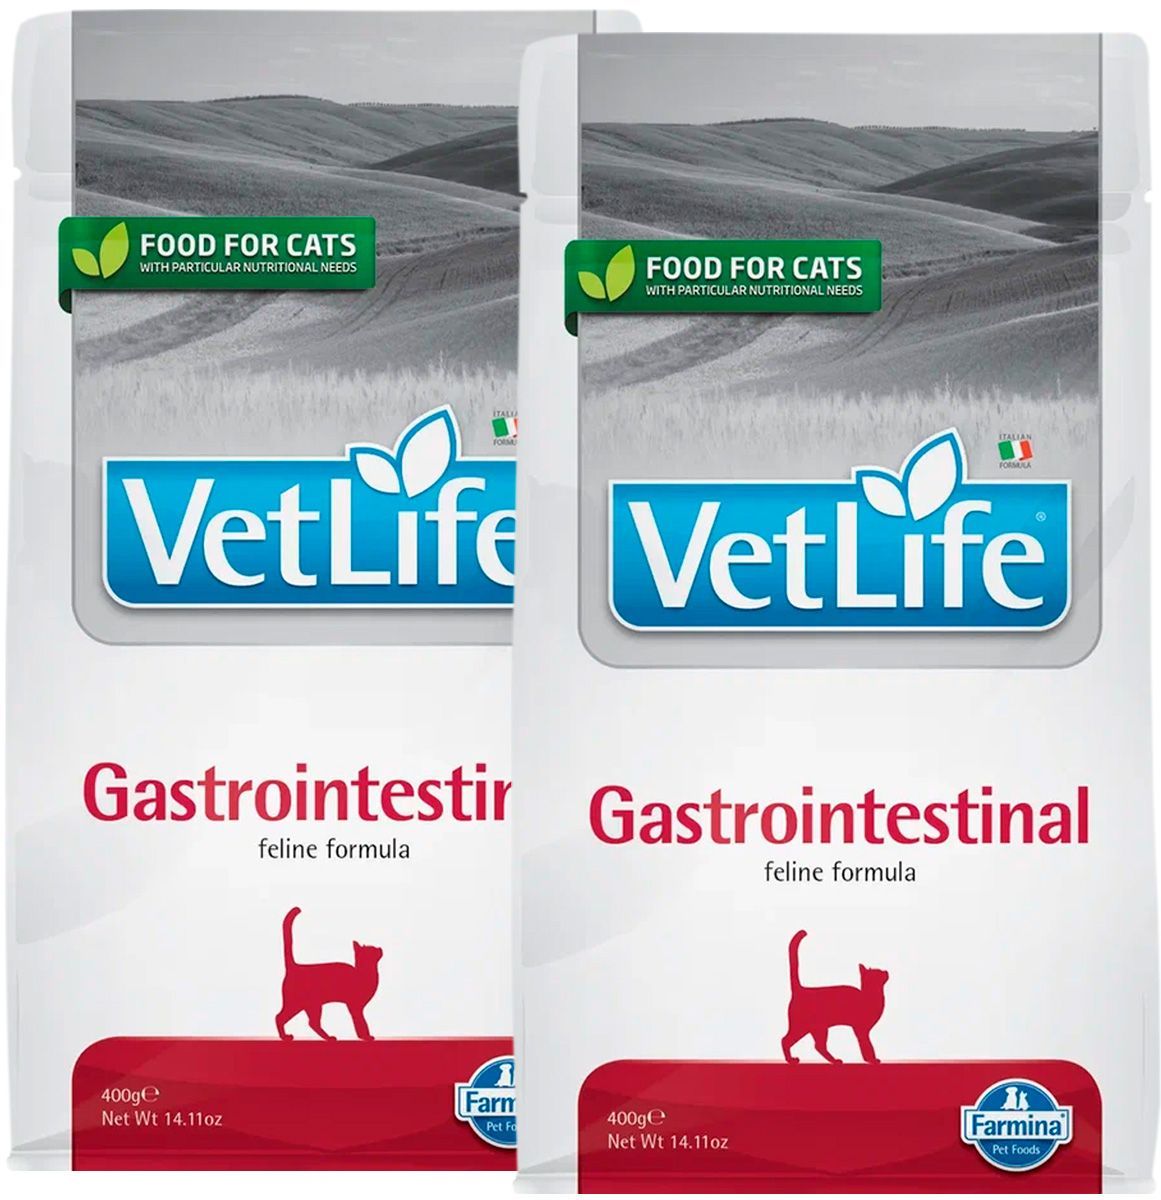 Vet life gastrointestinal купить. Farmina vet Life Cat Gastrointestinal. Vet Life для кошек. Farmina vet Life Cat hepatic. Корм для кошек Ренал Актив для чего.